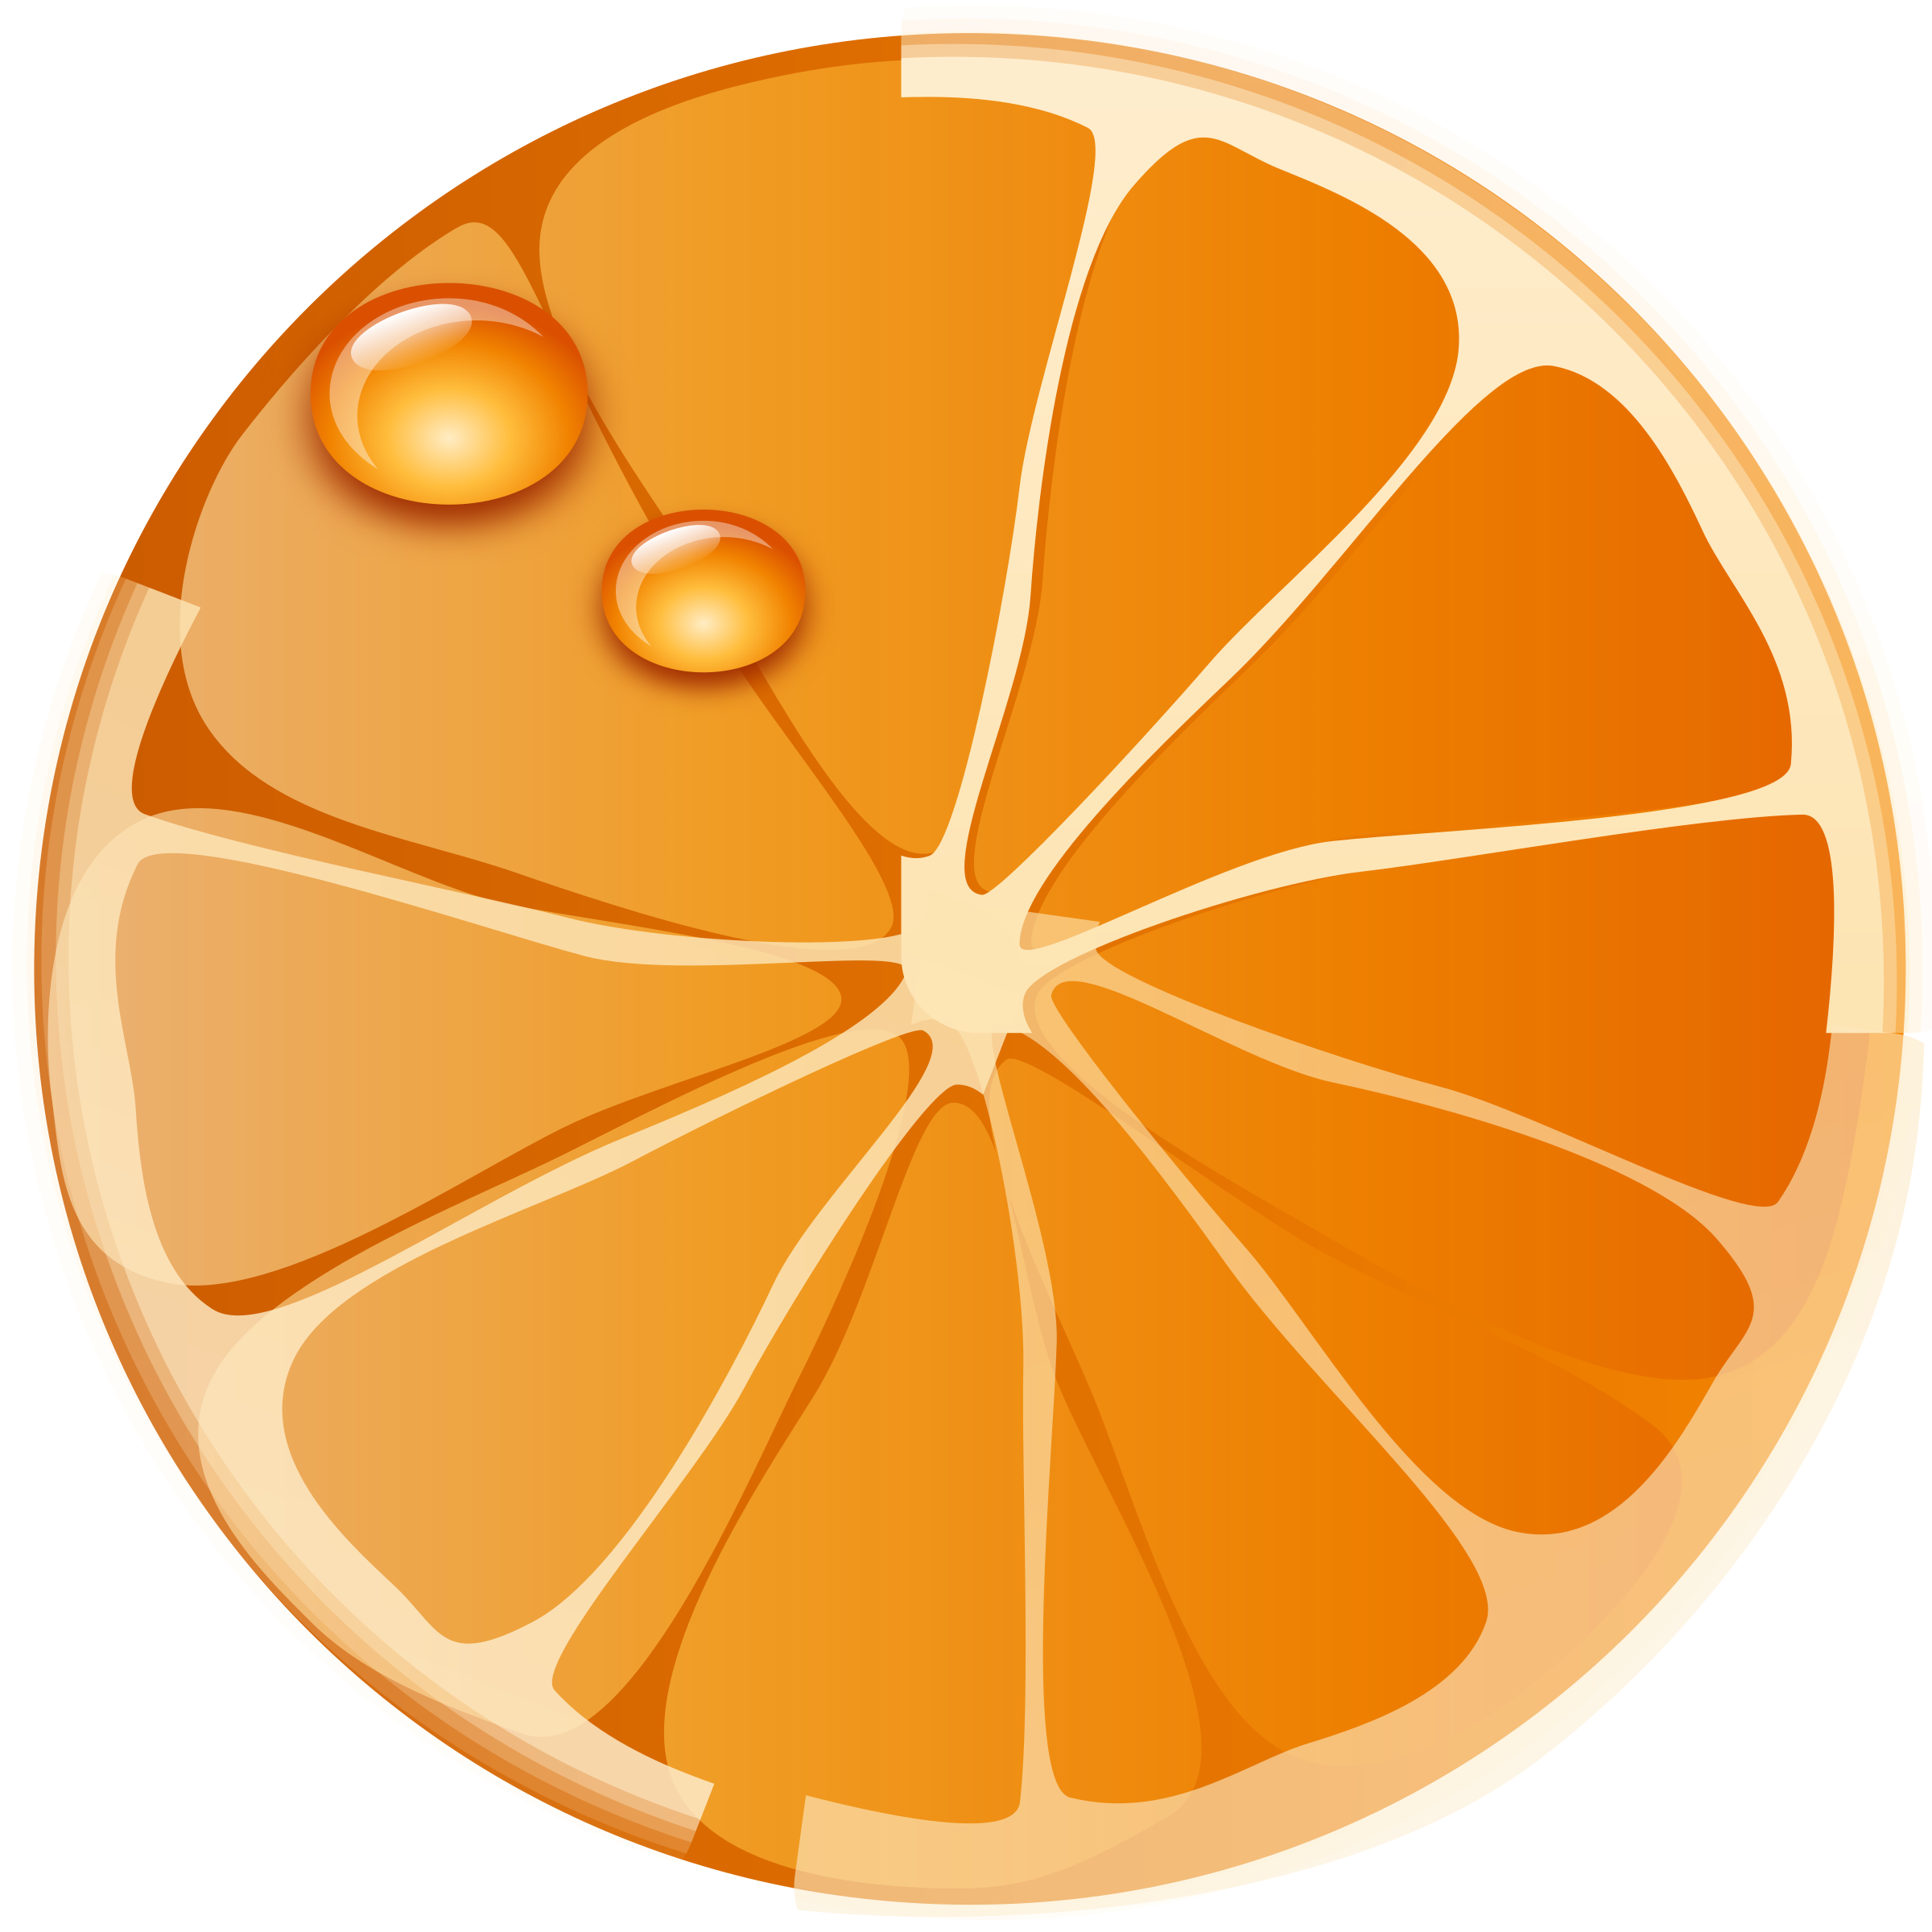 Clipart - Orange